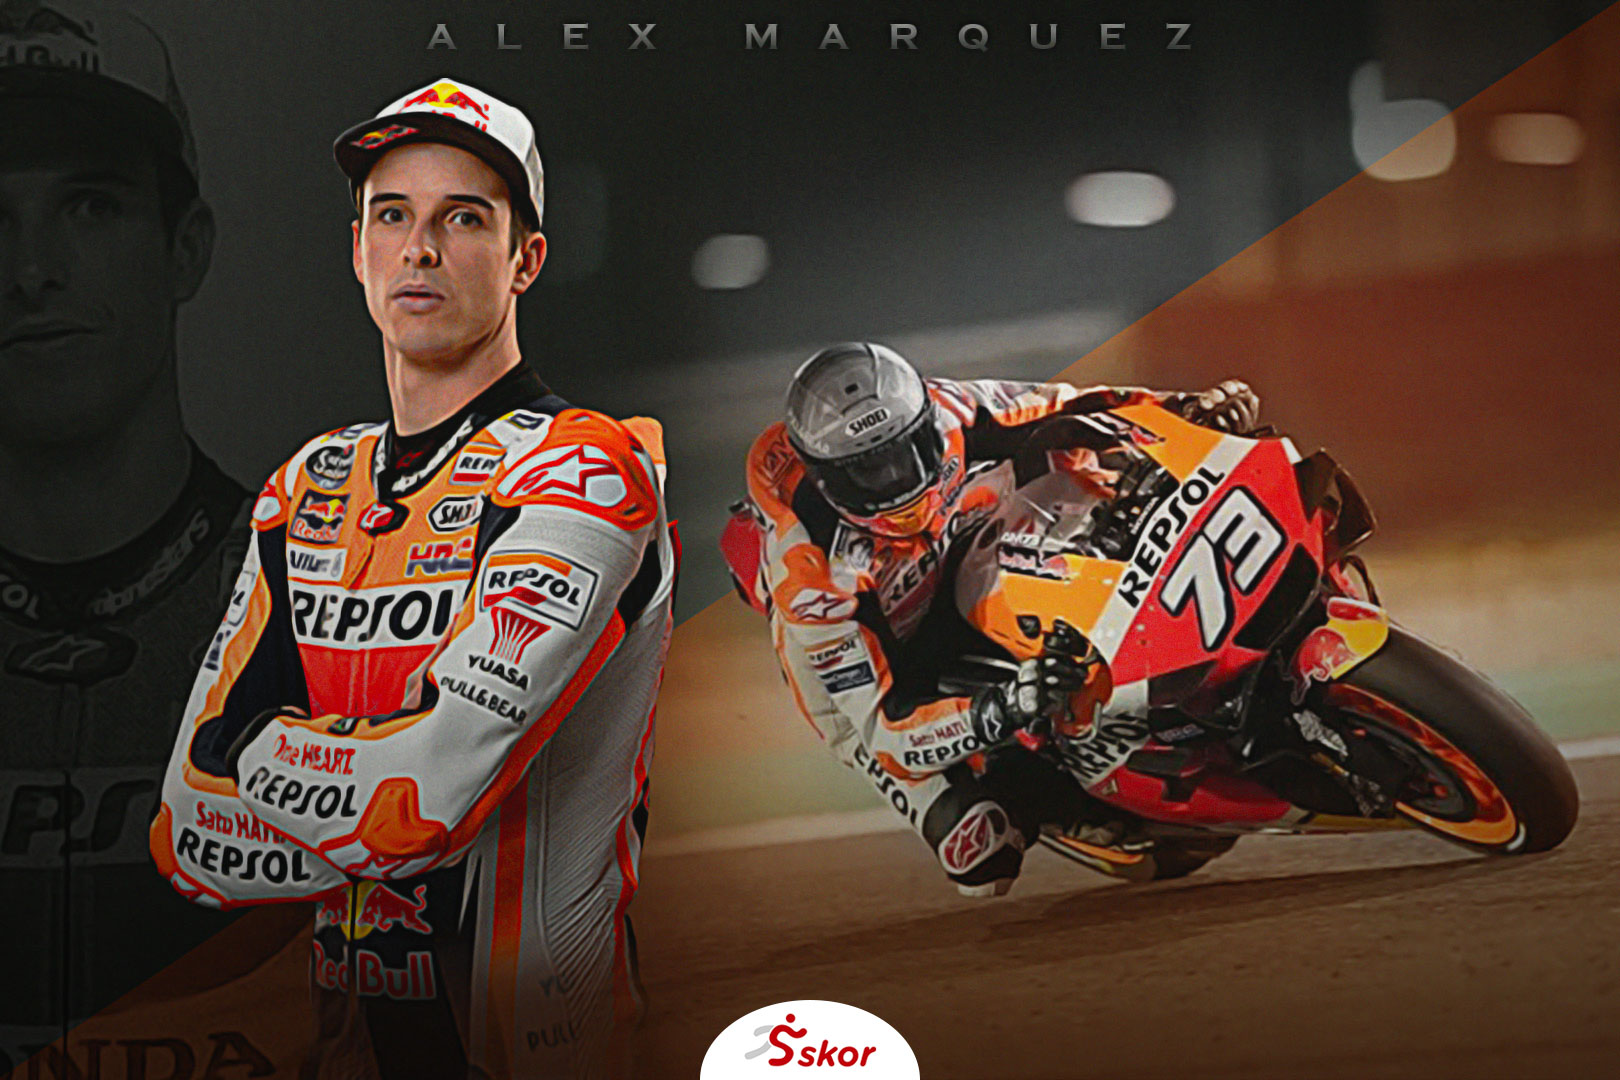 MotoGP San Marino 2020: Alex Marquez Berharap Tuah Kemenangan di Video Gim